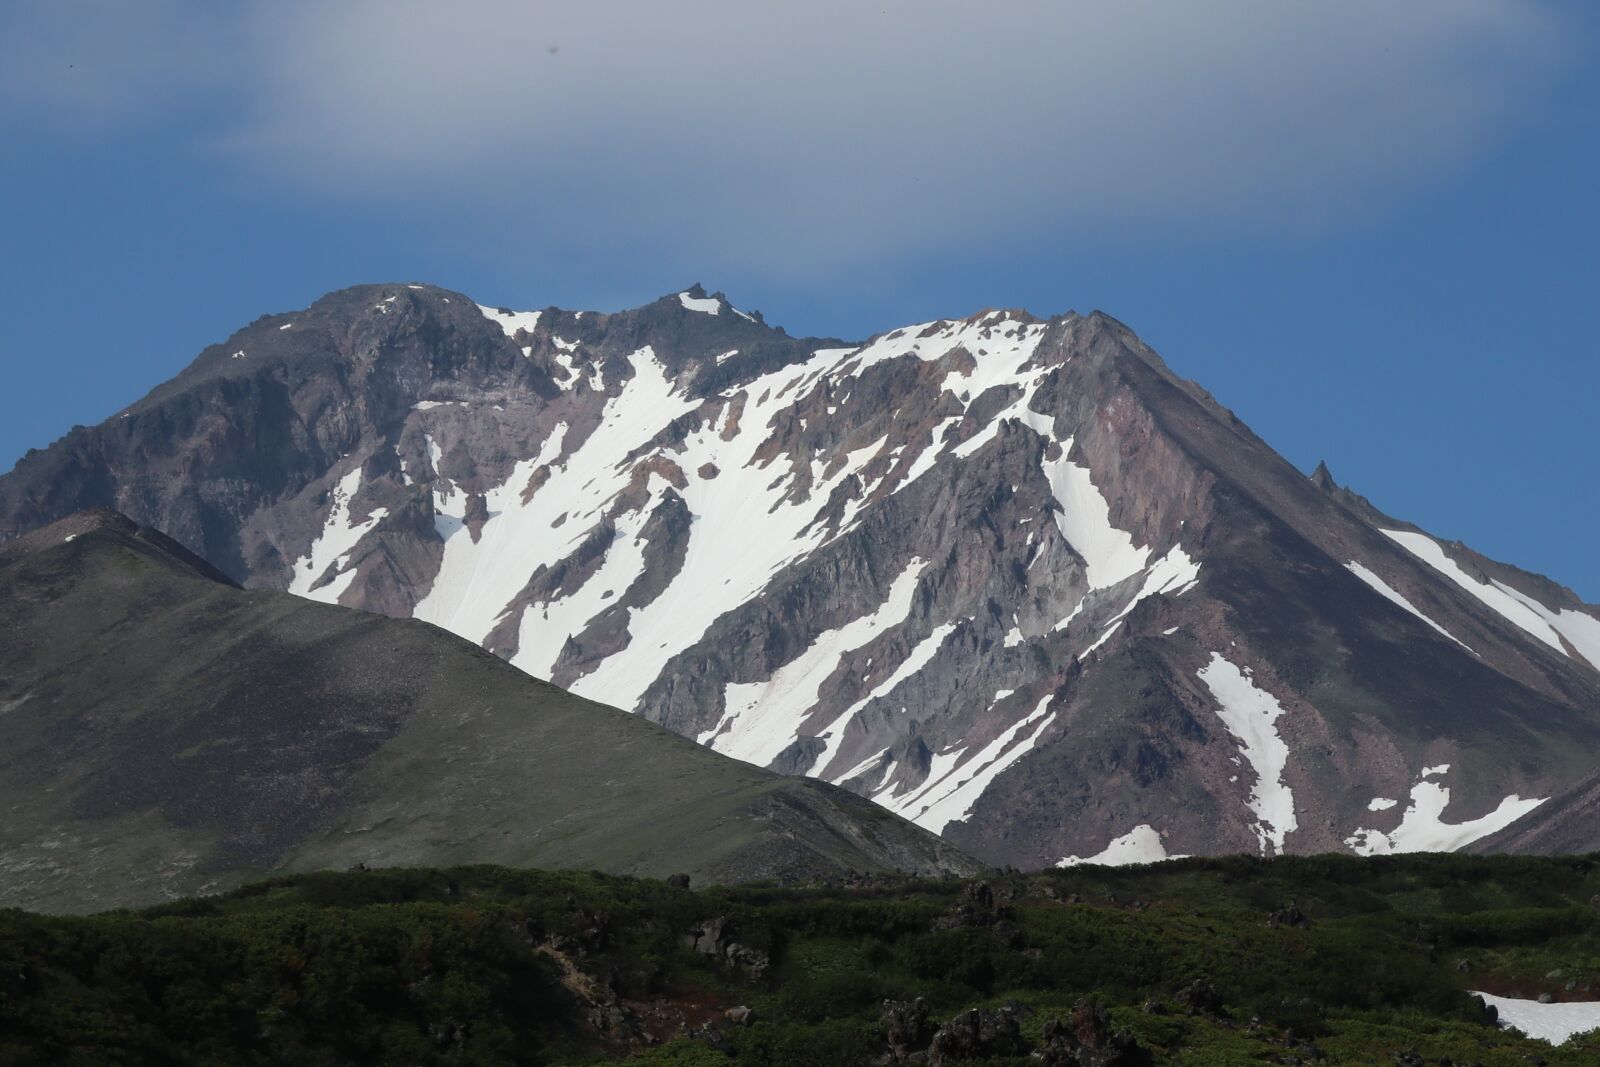 Canon PowerShot G1 X Mark III sample photo. Volcanoes, mountains, kamchatka photography